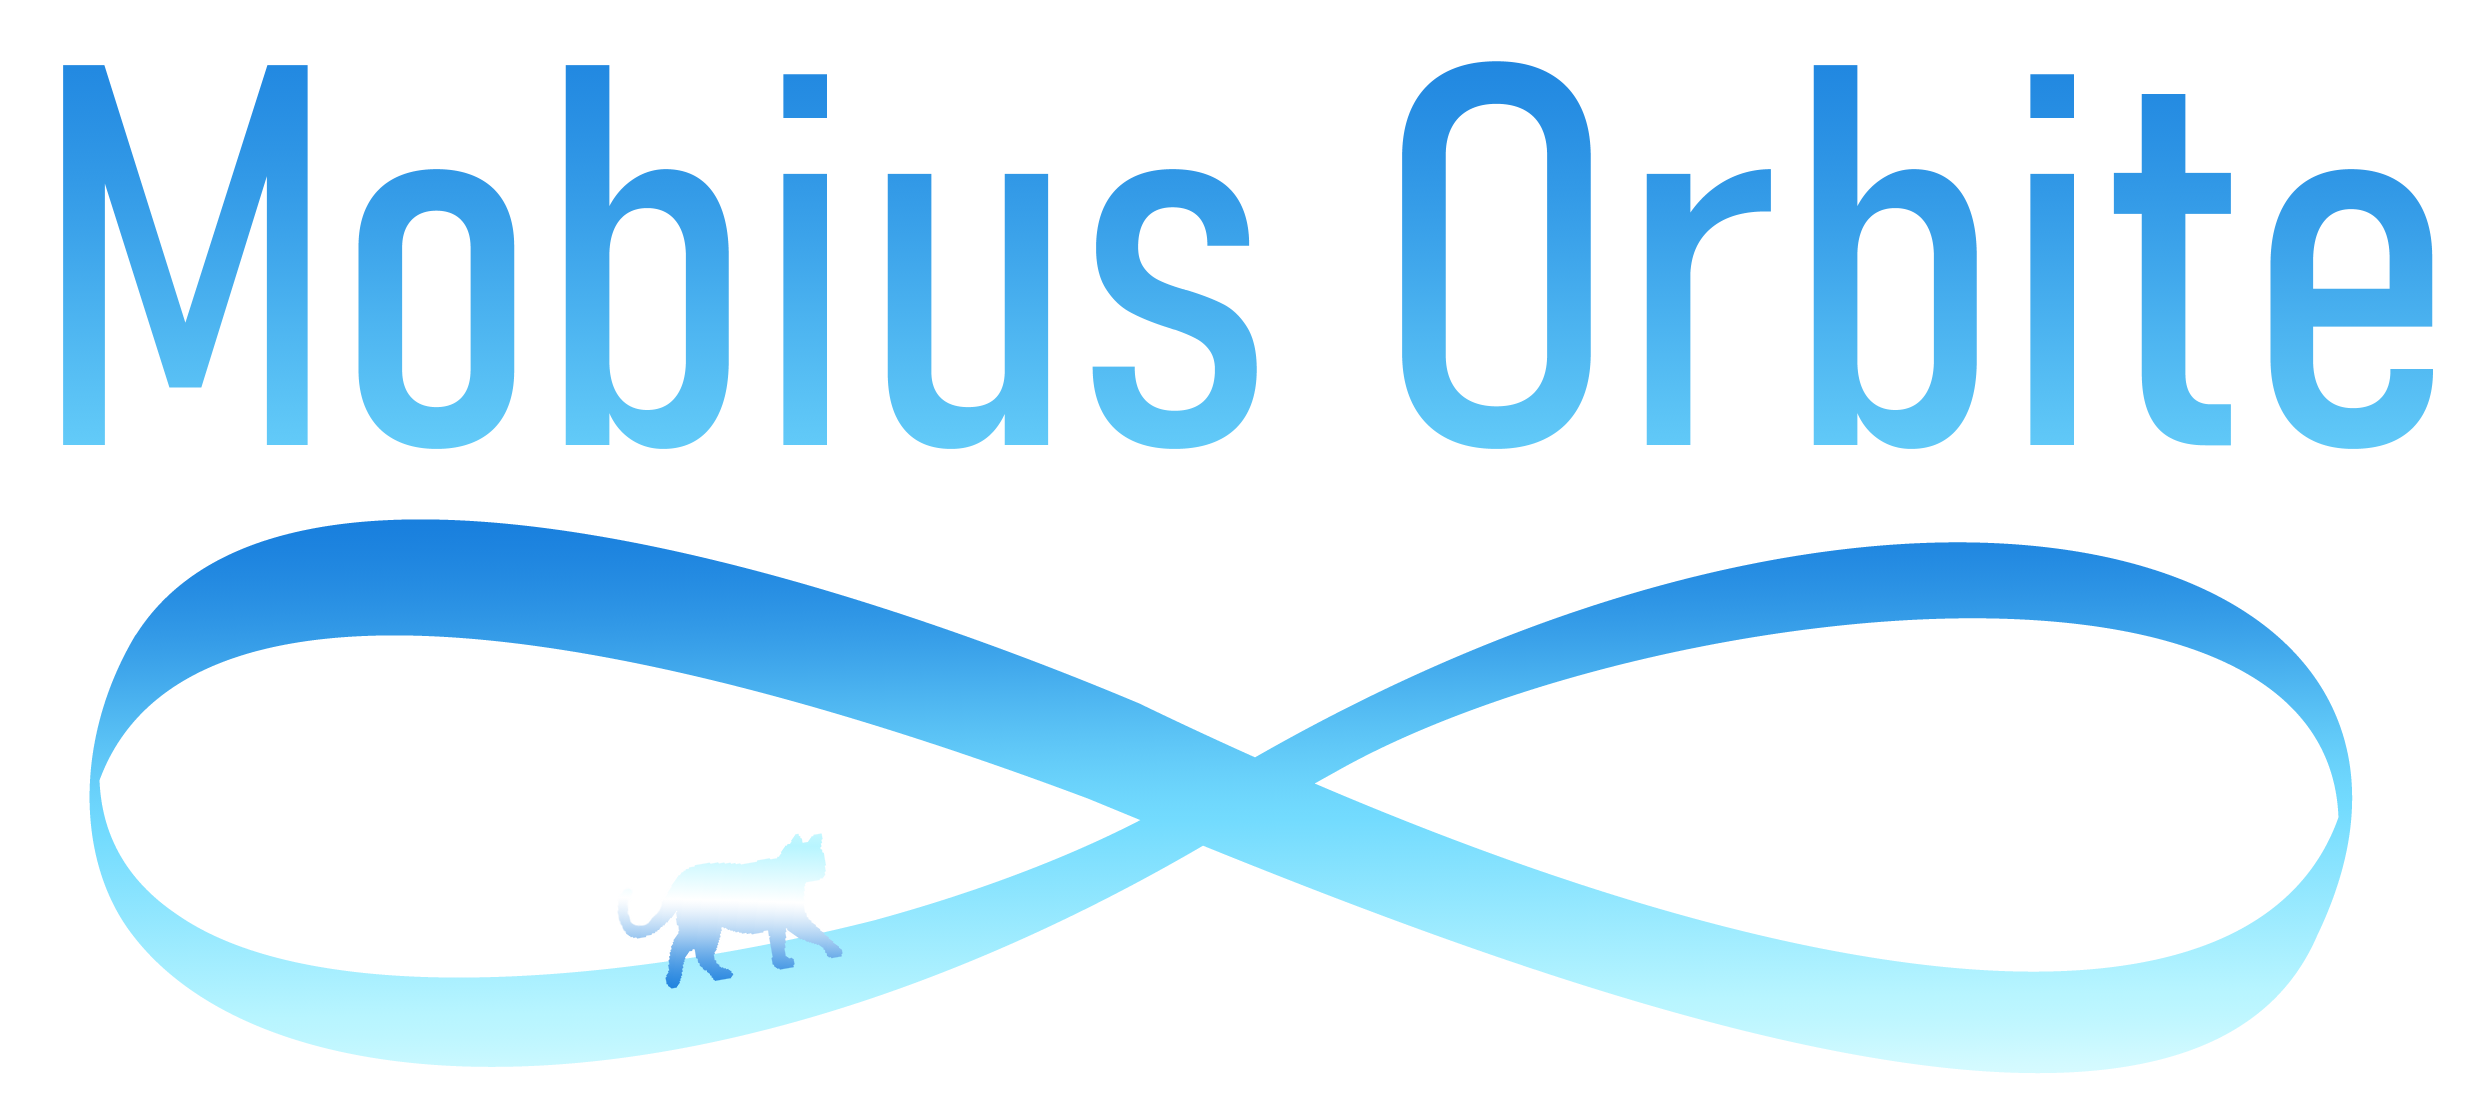 Mobius Orbite